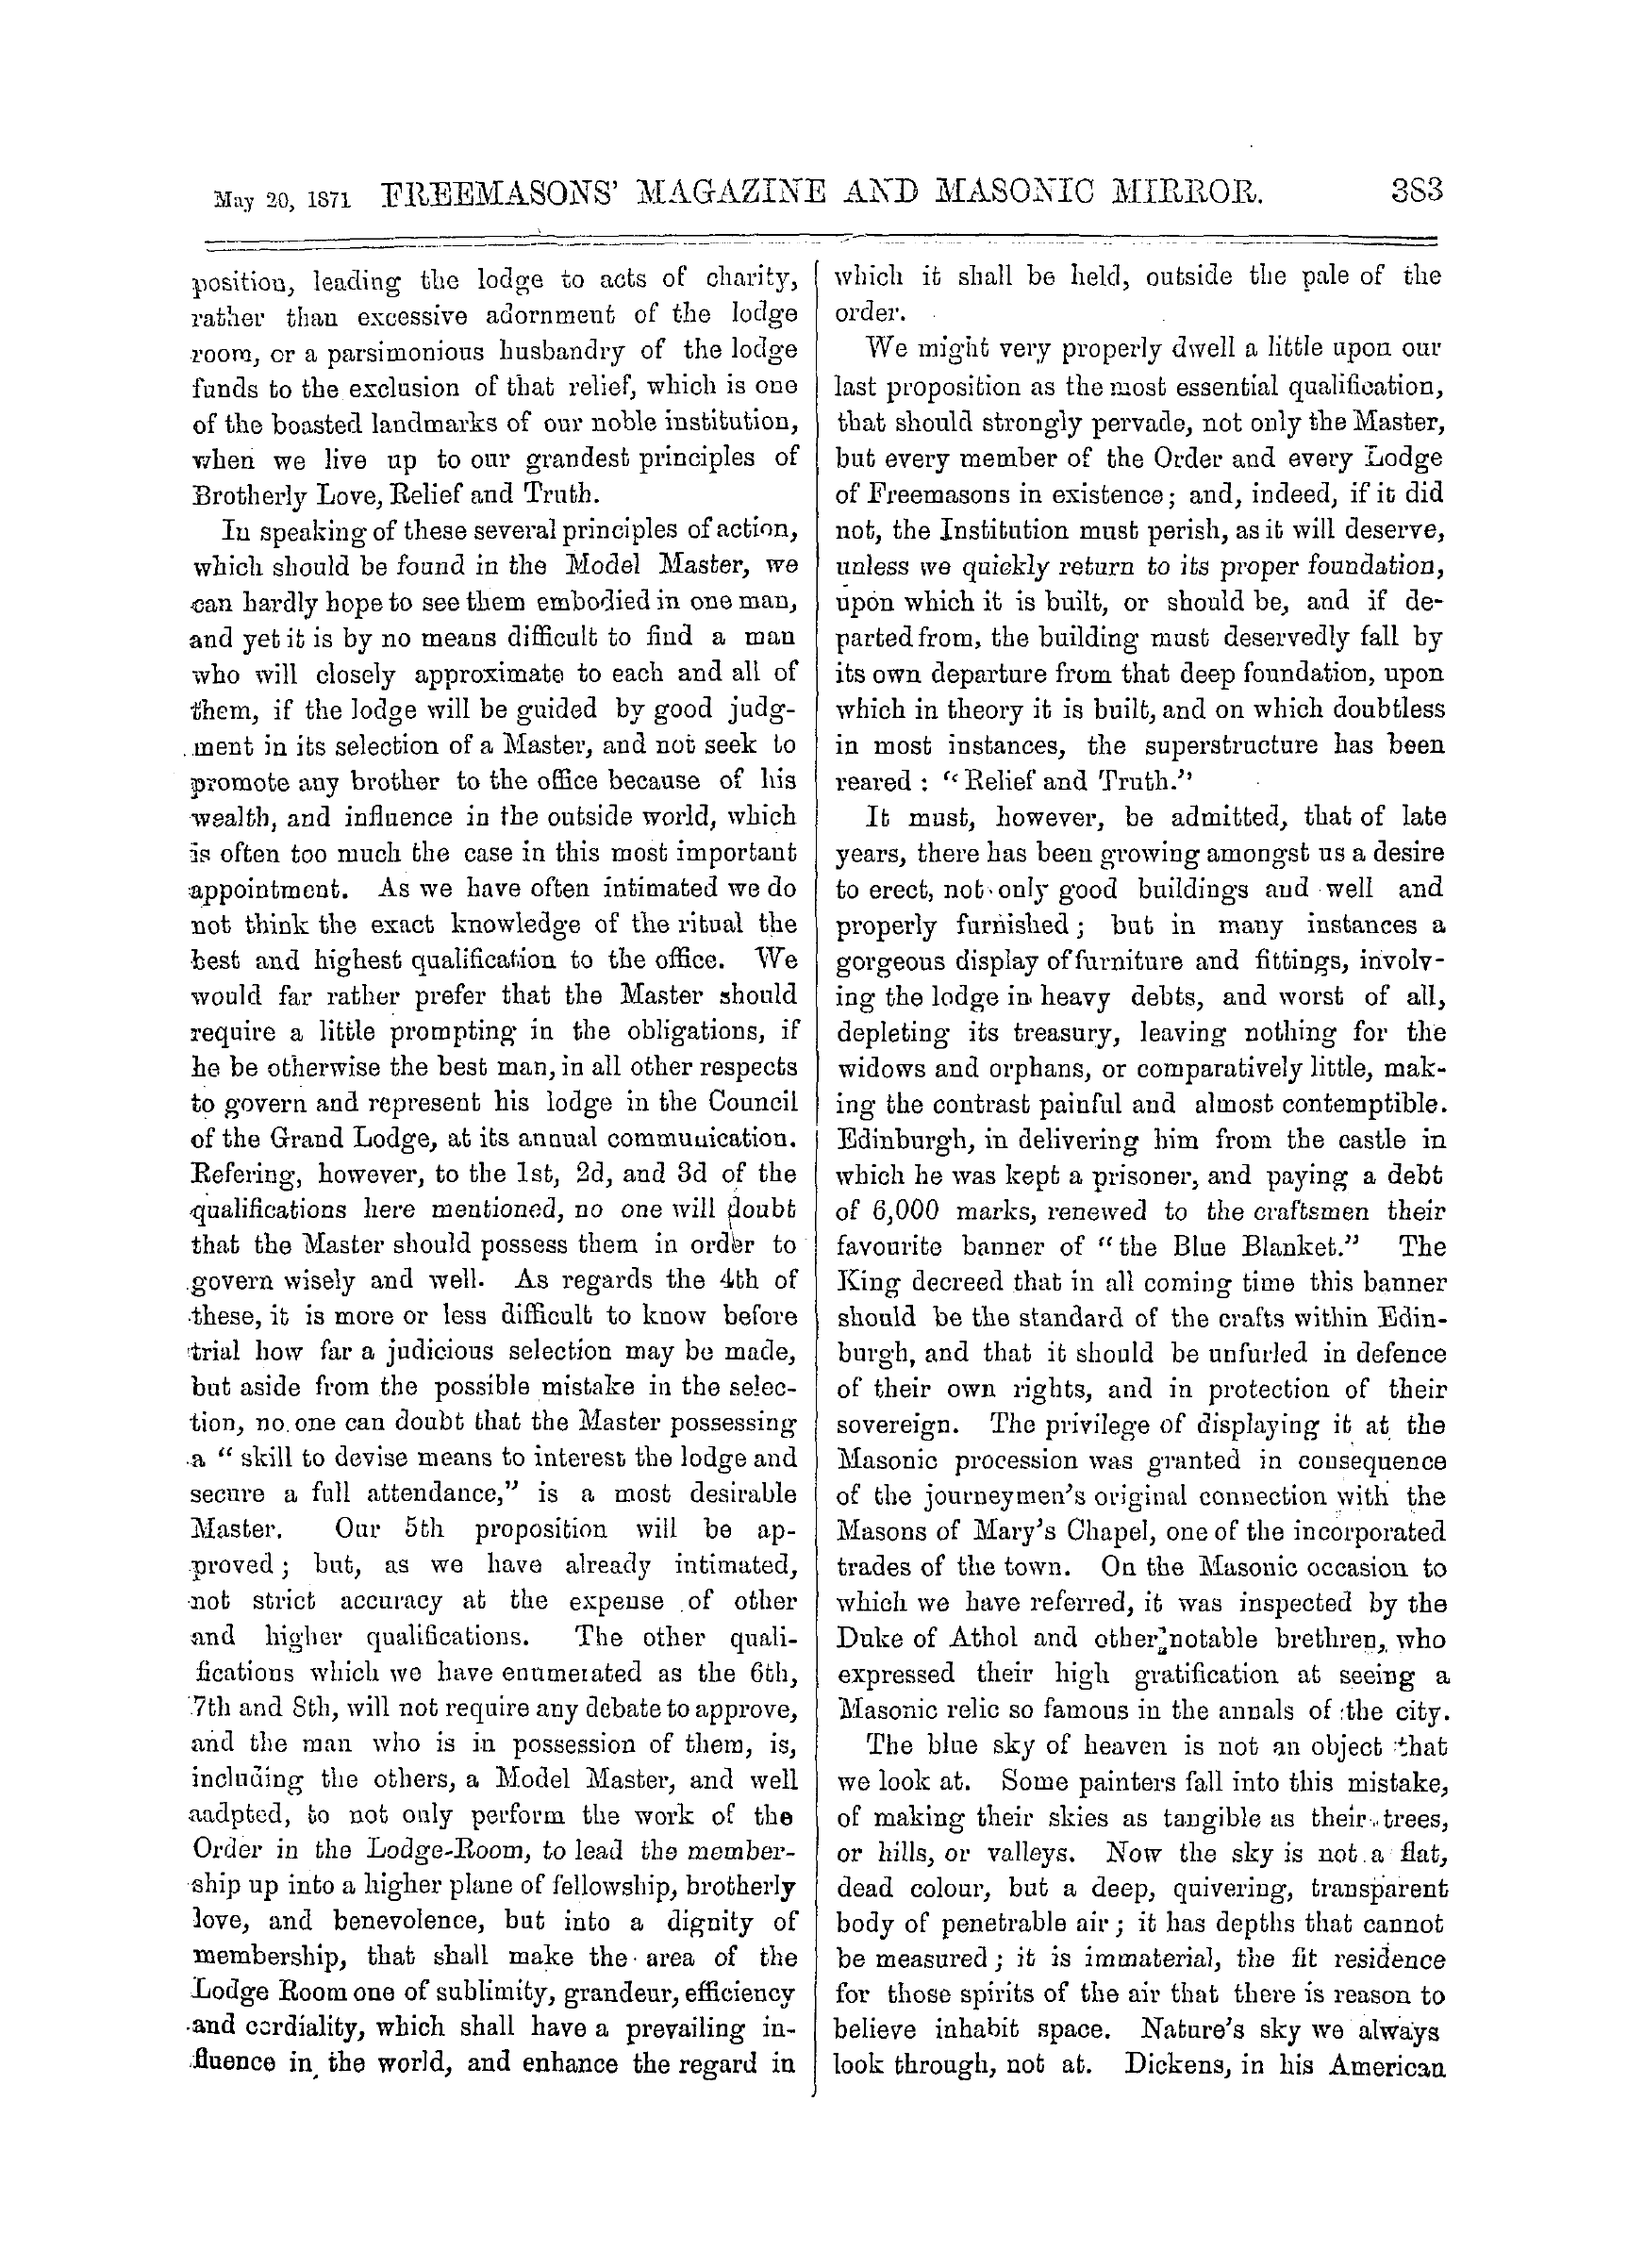 The Freemasons' Monthly Magazine: 1871-05-20: 3